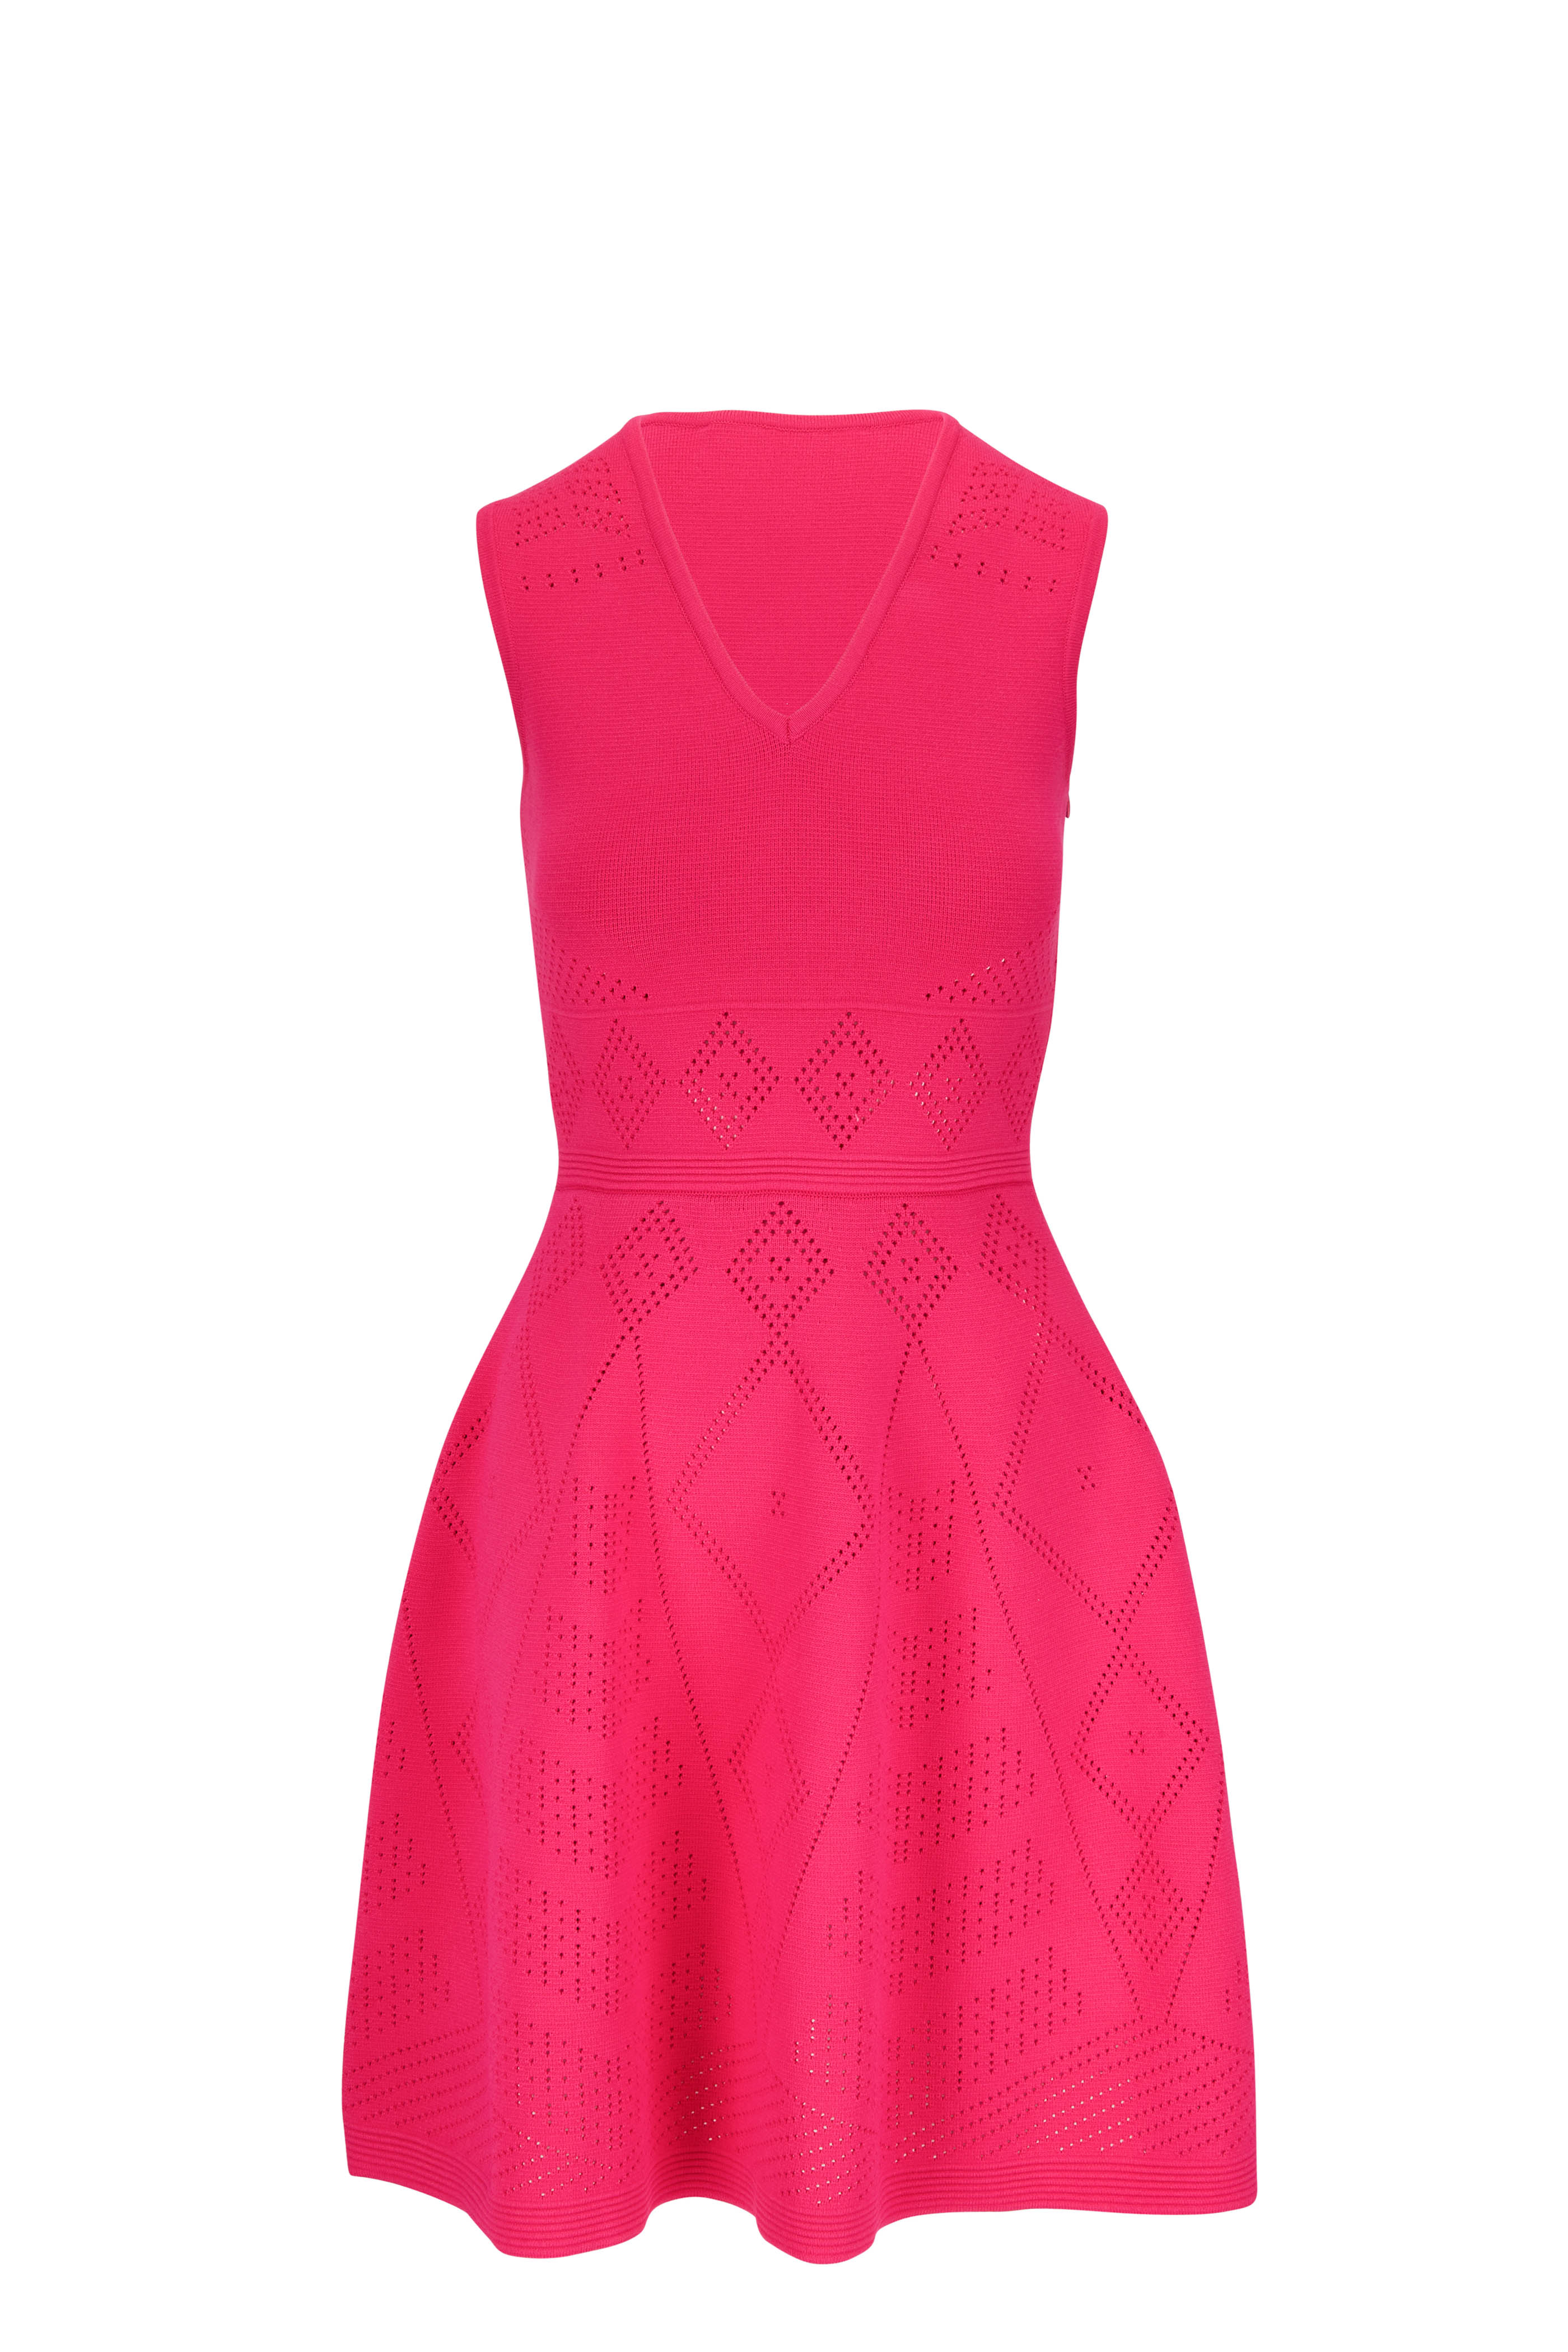 Carolina Herrera - Pink Floral Drop Shoulder Mini Dress